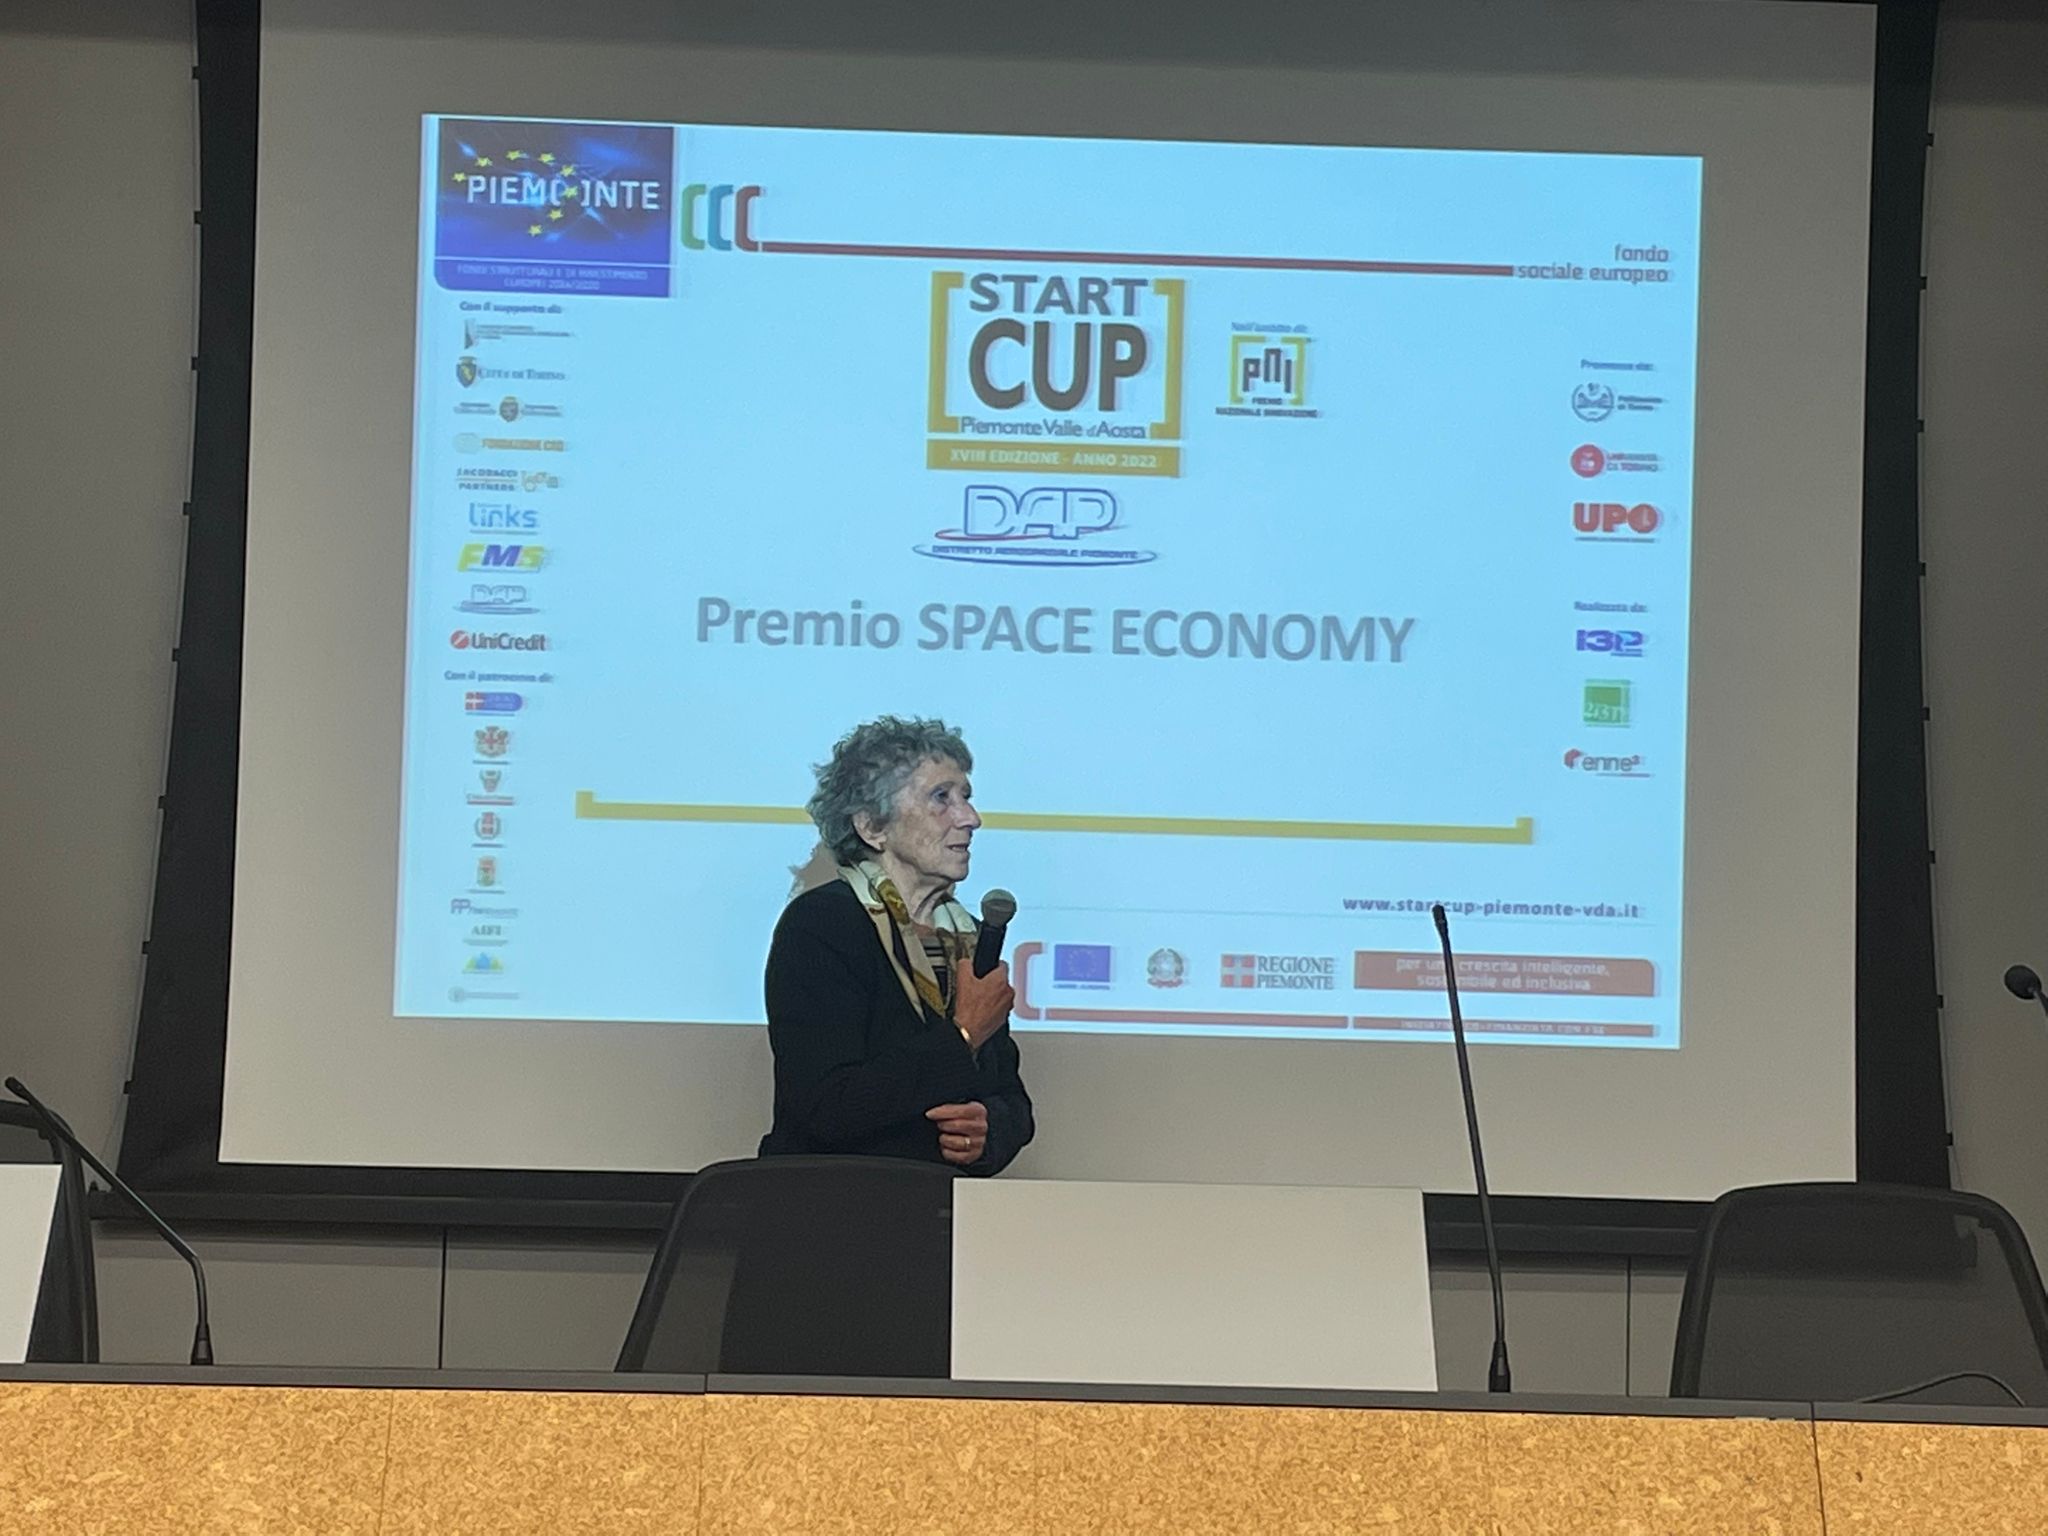 Cerimonia di premiazione della XVIII edizione della Start Cup Piemonte Valle d’Aosta 2022: tutti i premiati